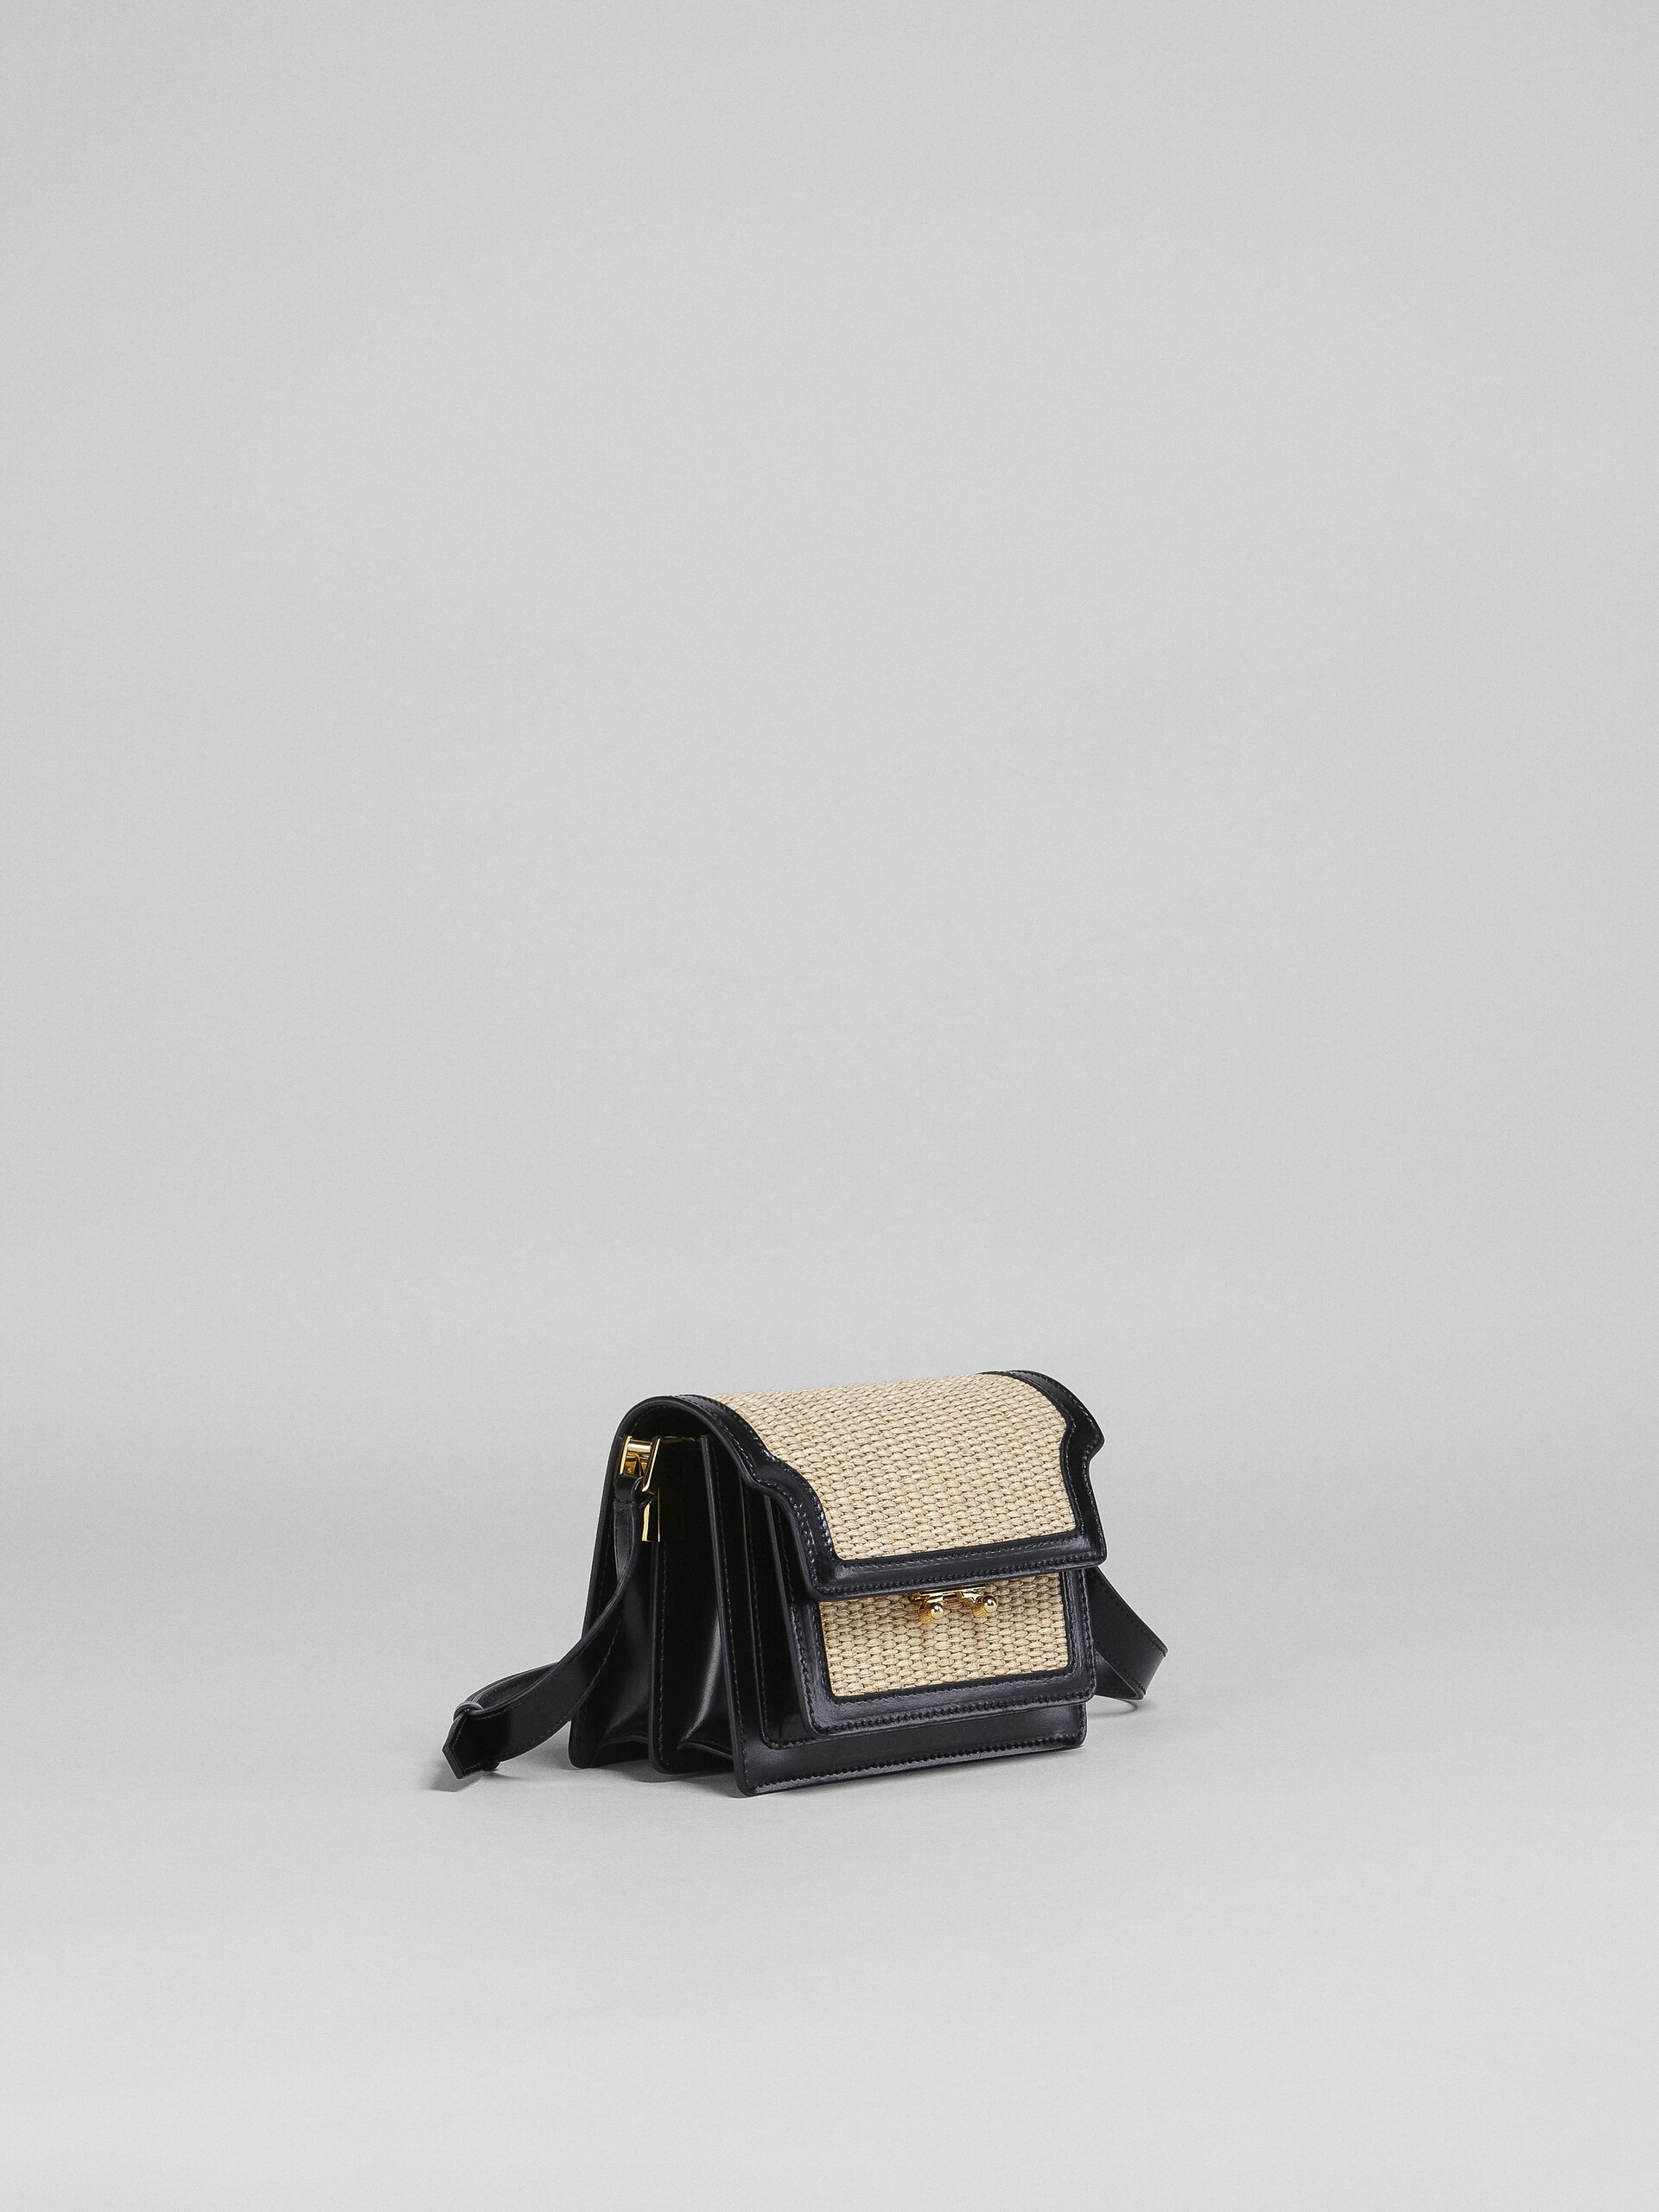 TRUNK SOFT mini bag in black leather and raffia - Shoulder Bag - Image 6